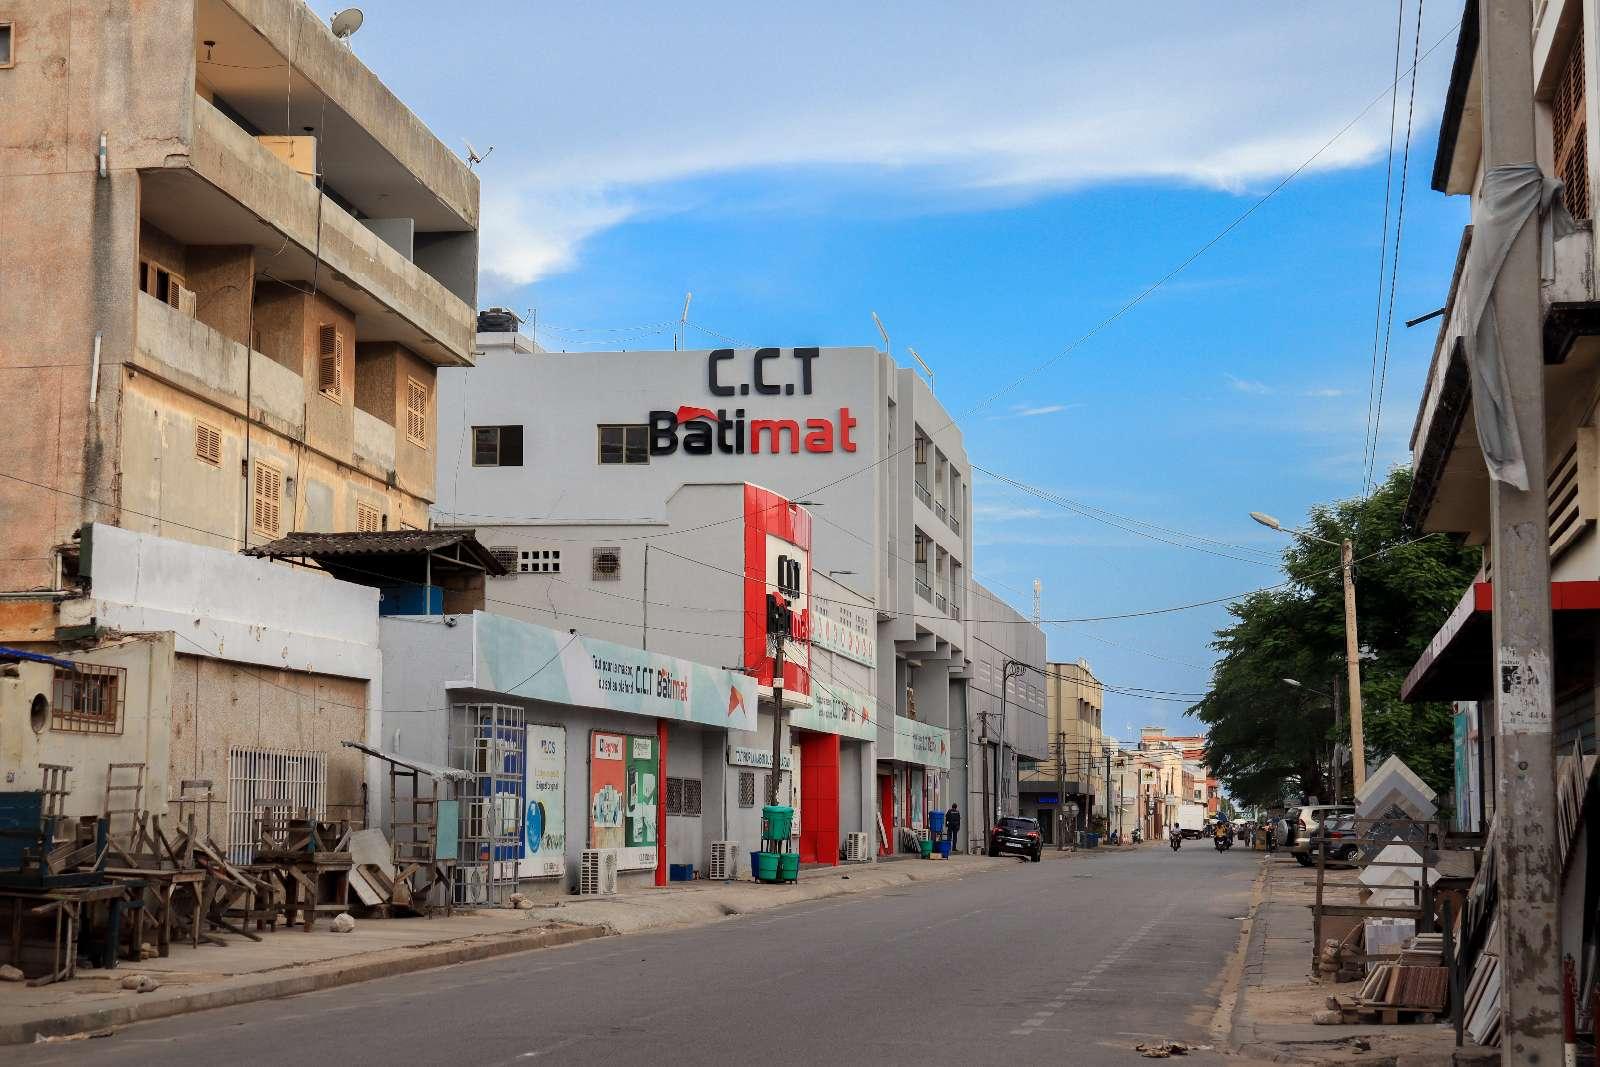 CCT Batimat Lomé